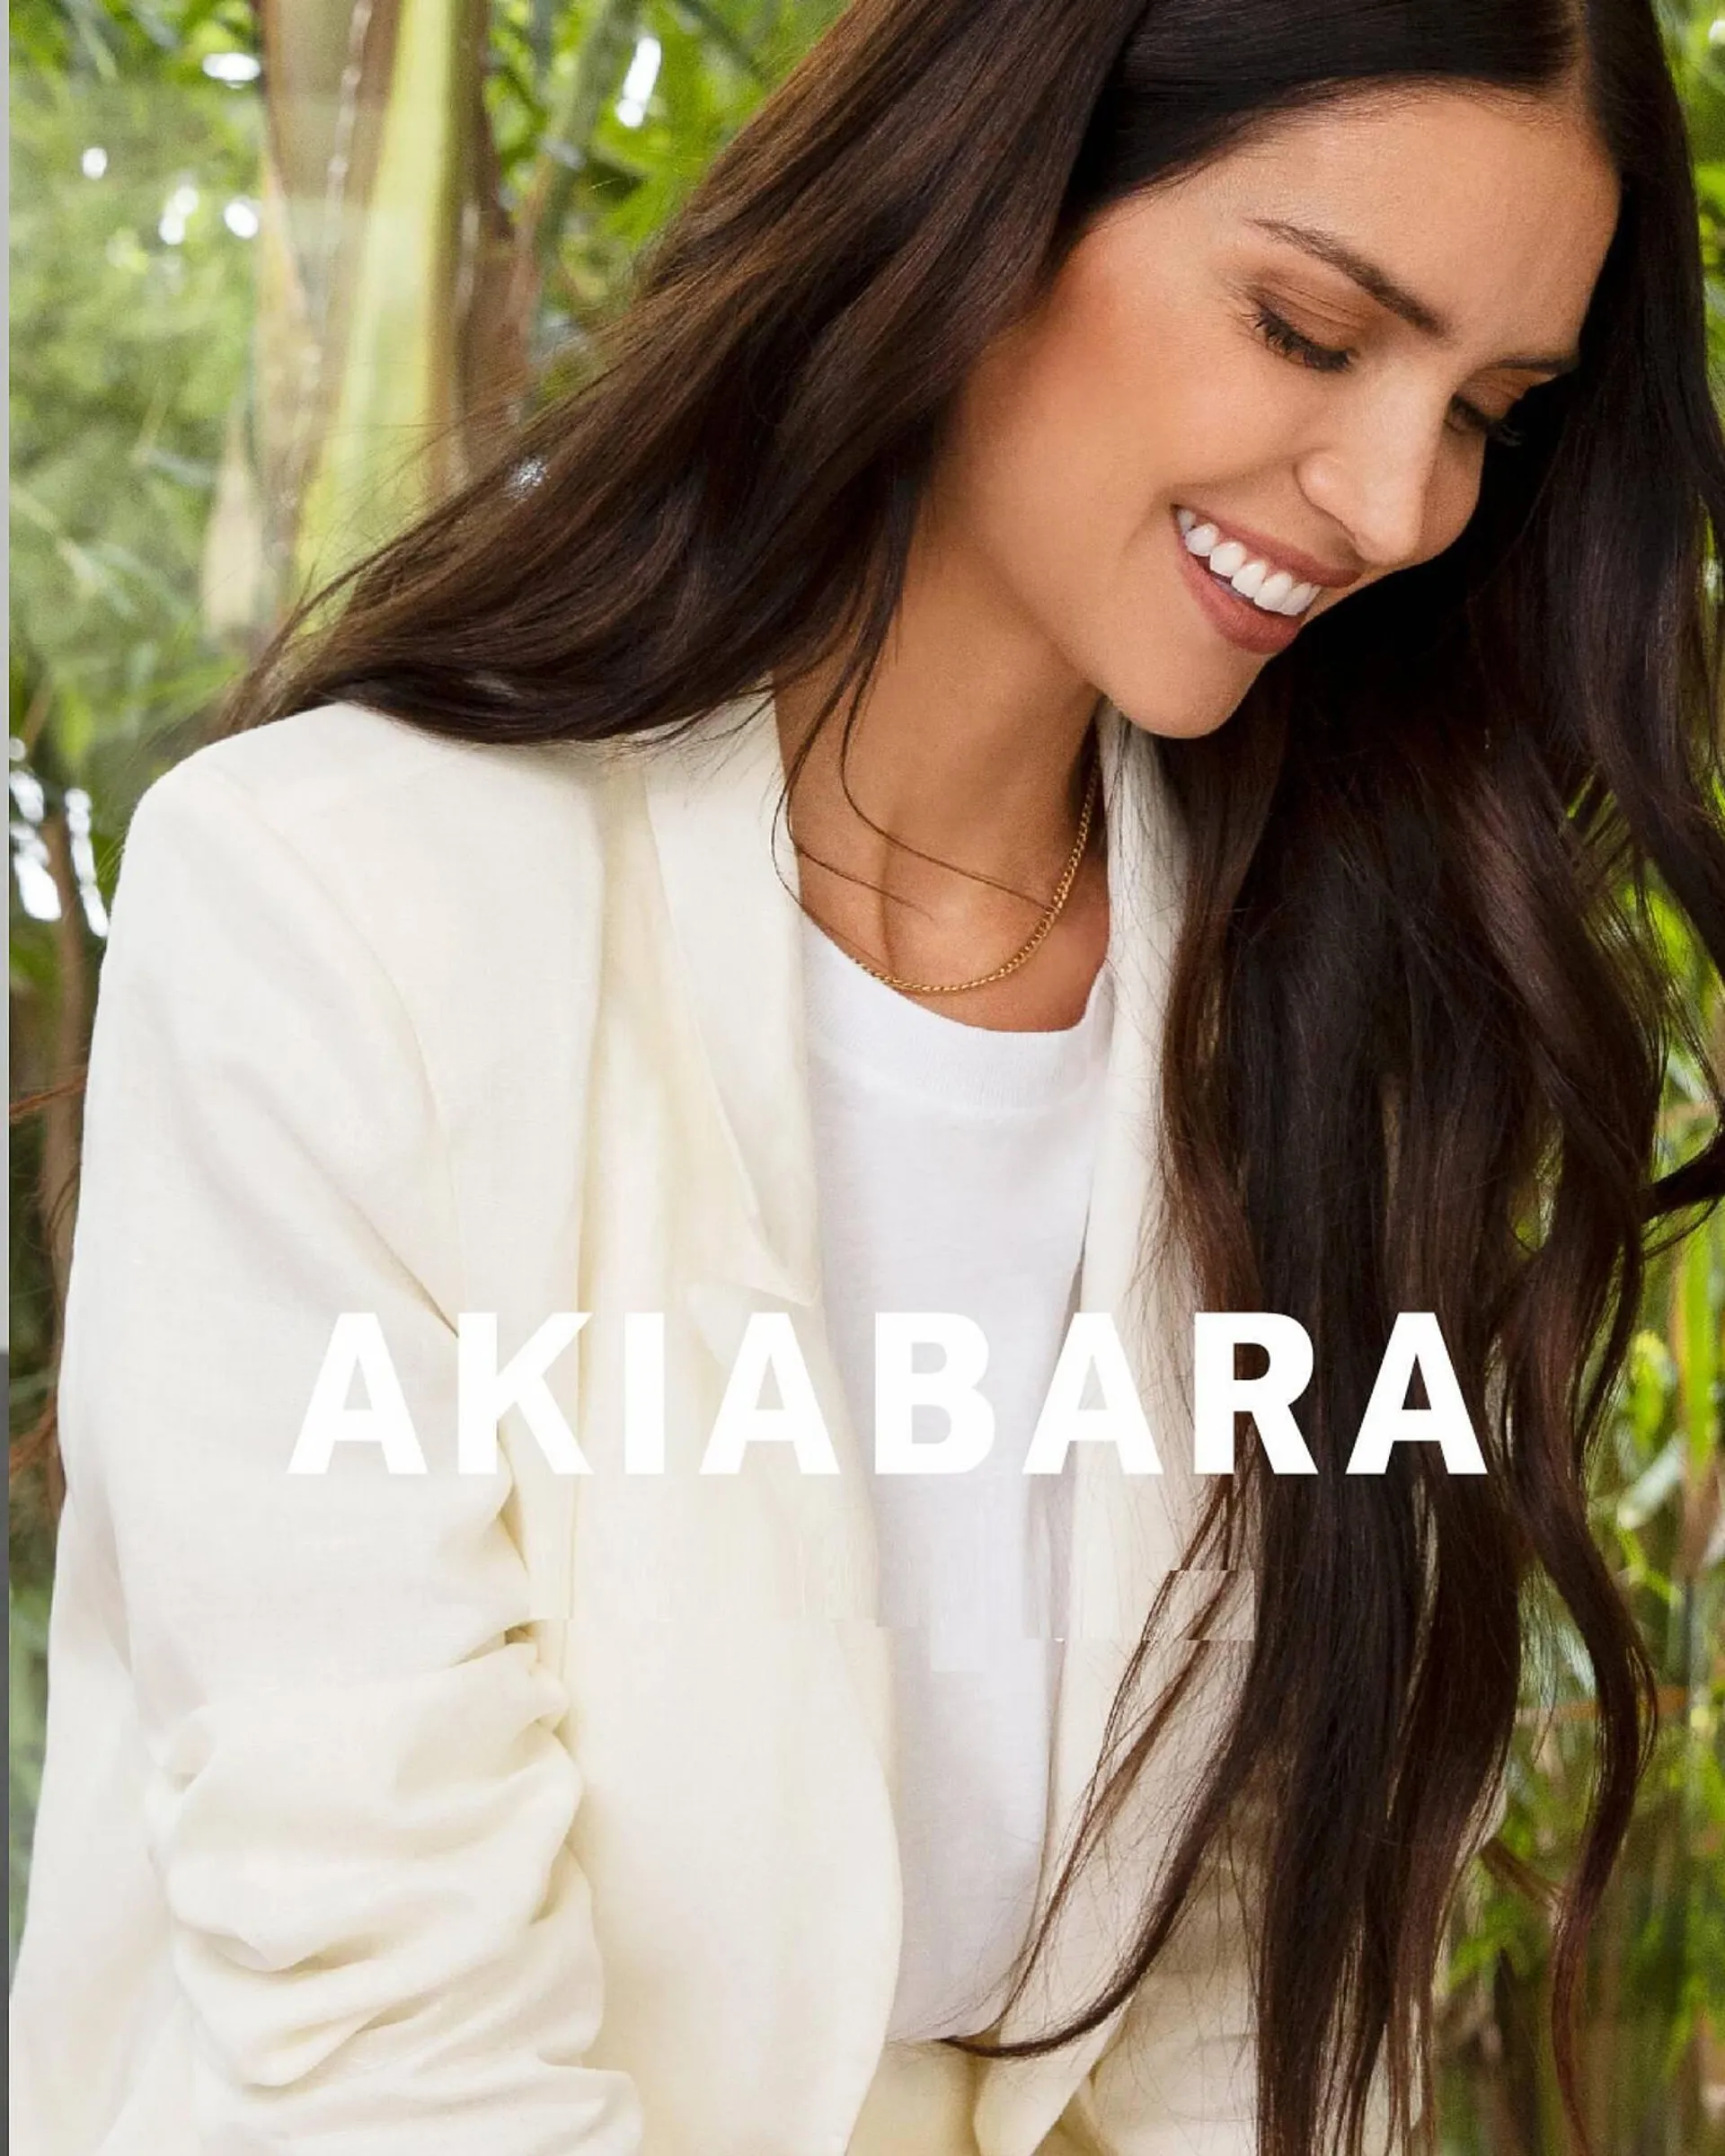 Catálogo Akiabara